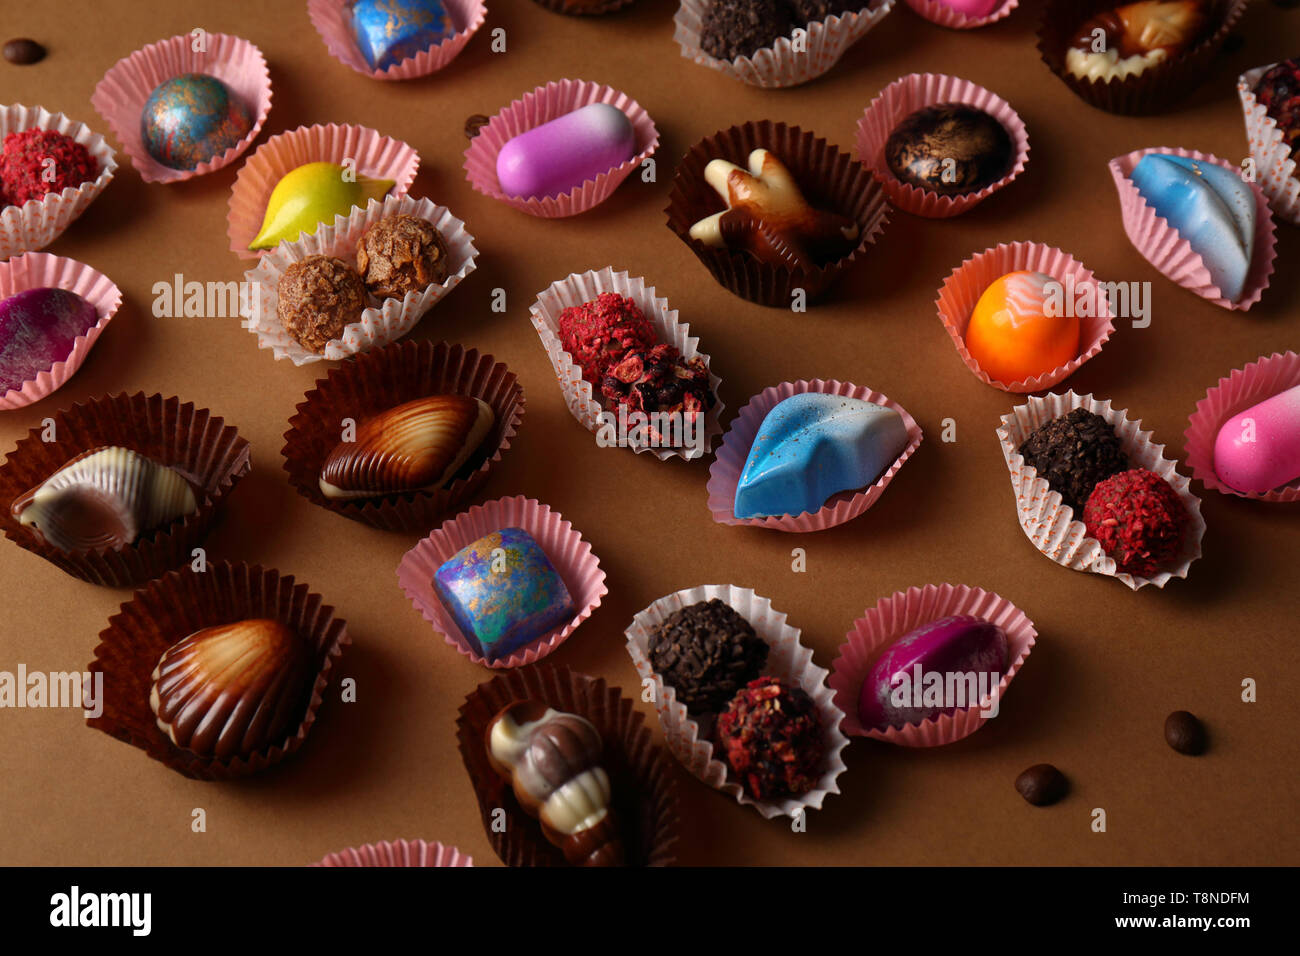 Trufas de chocolate decoradas fotografías e imágenes de alta resolución -  Página 5 - Alamy